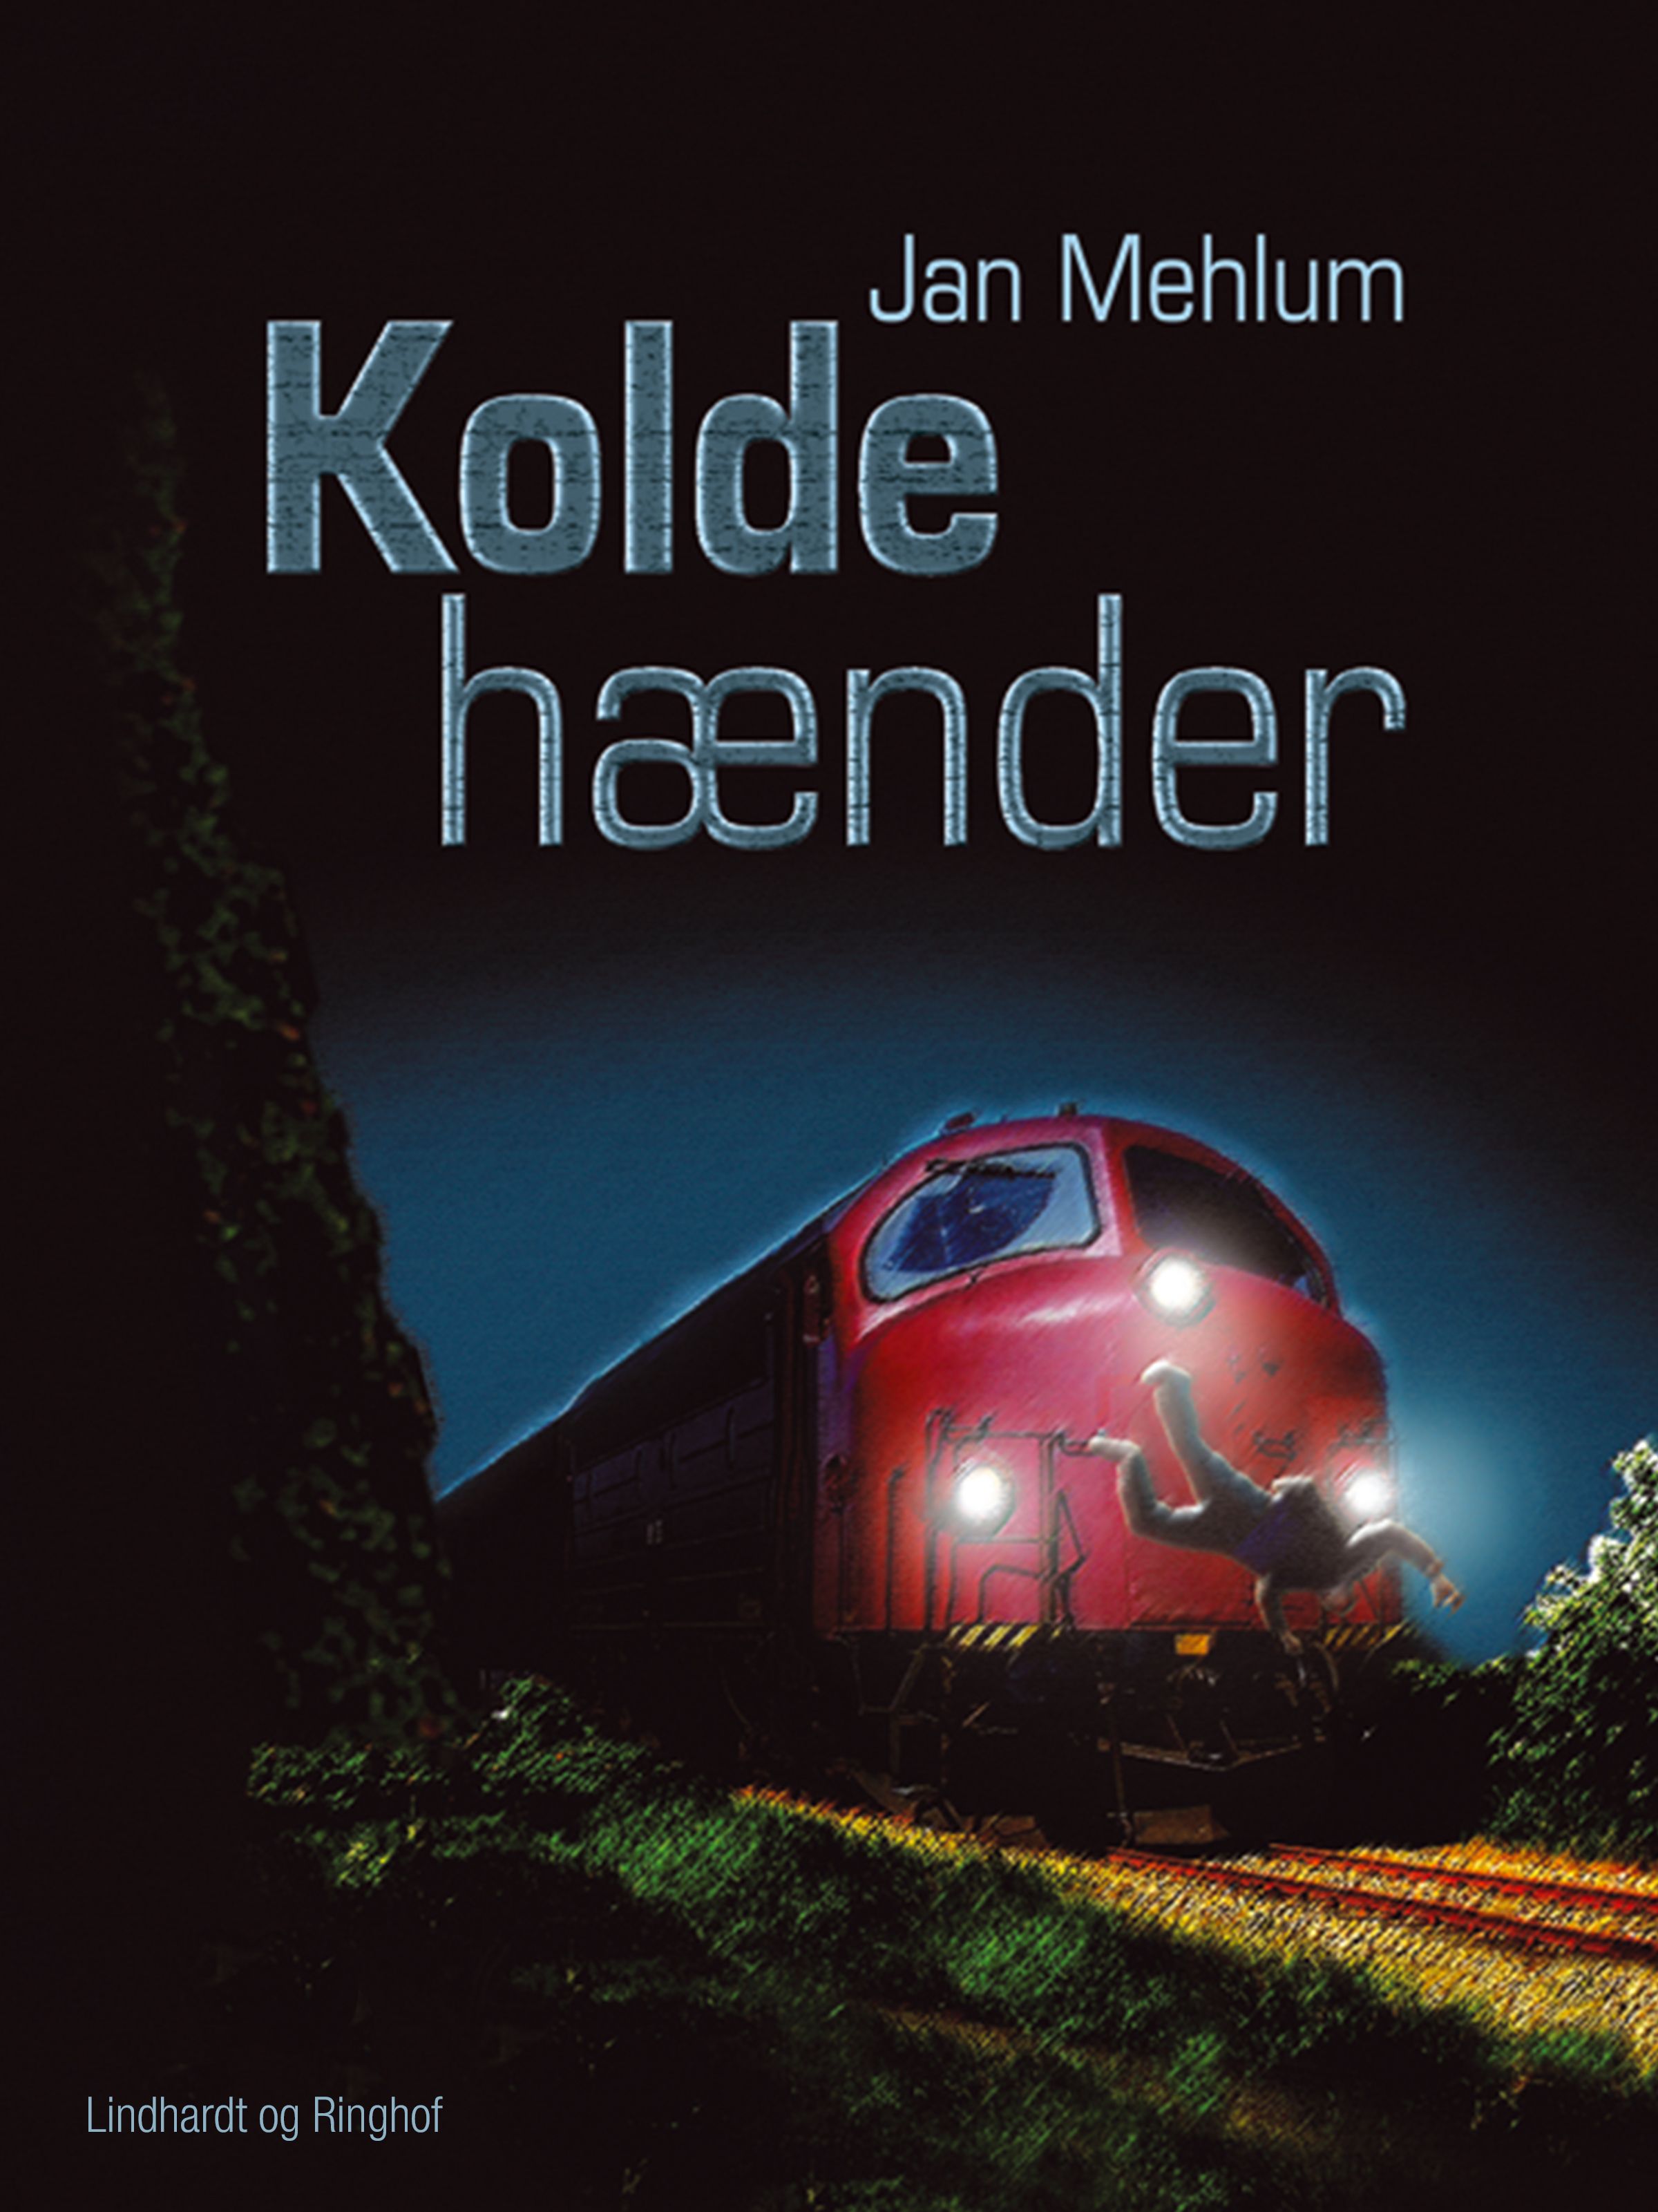 Kolde hænder, audiobook by Jan Mehlum